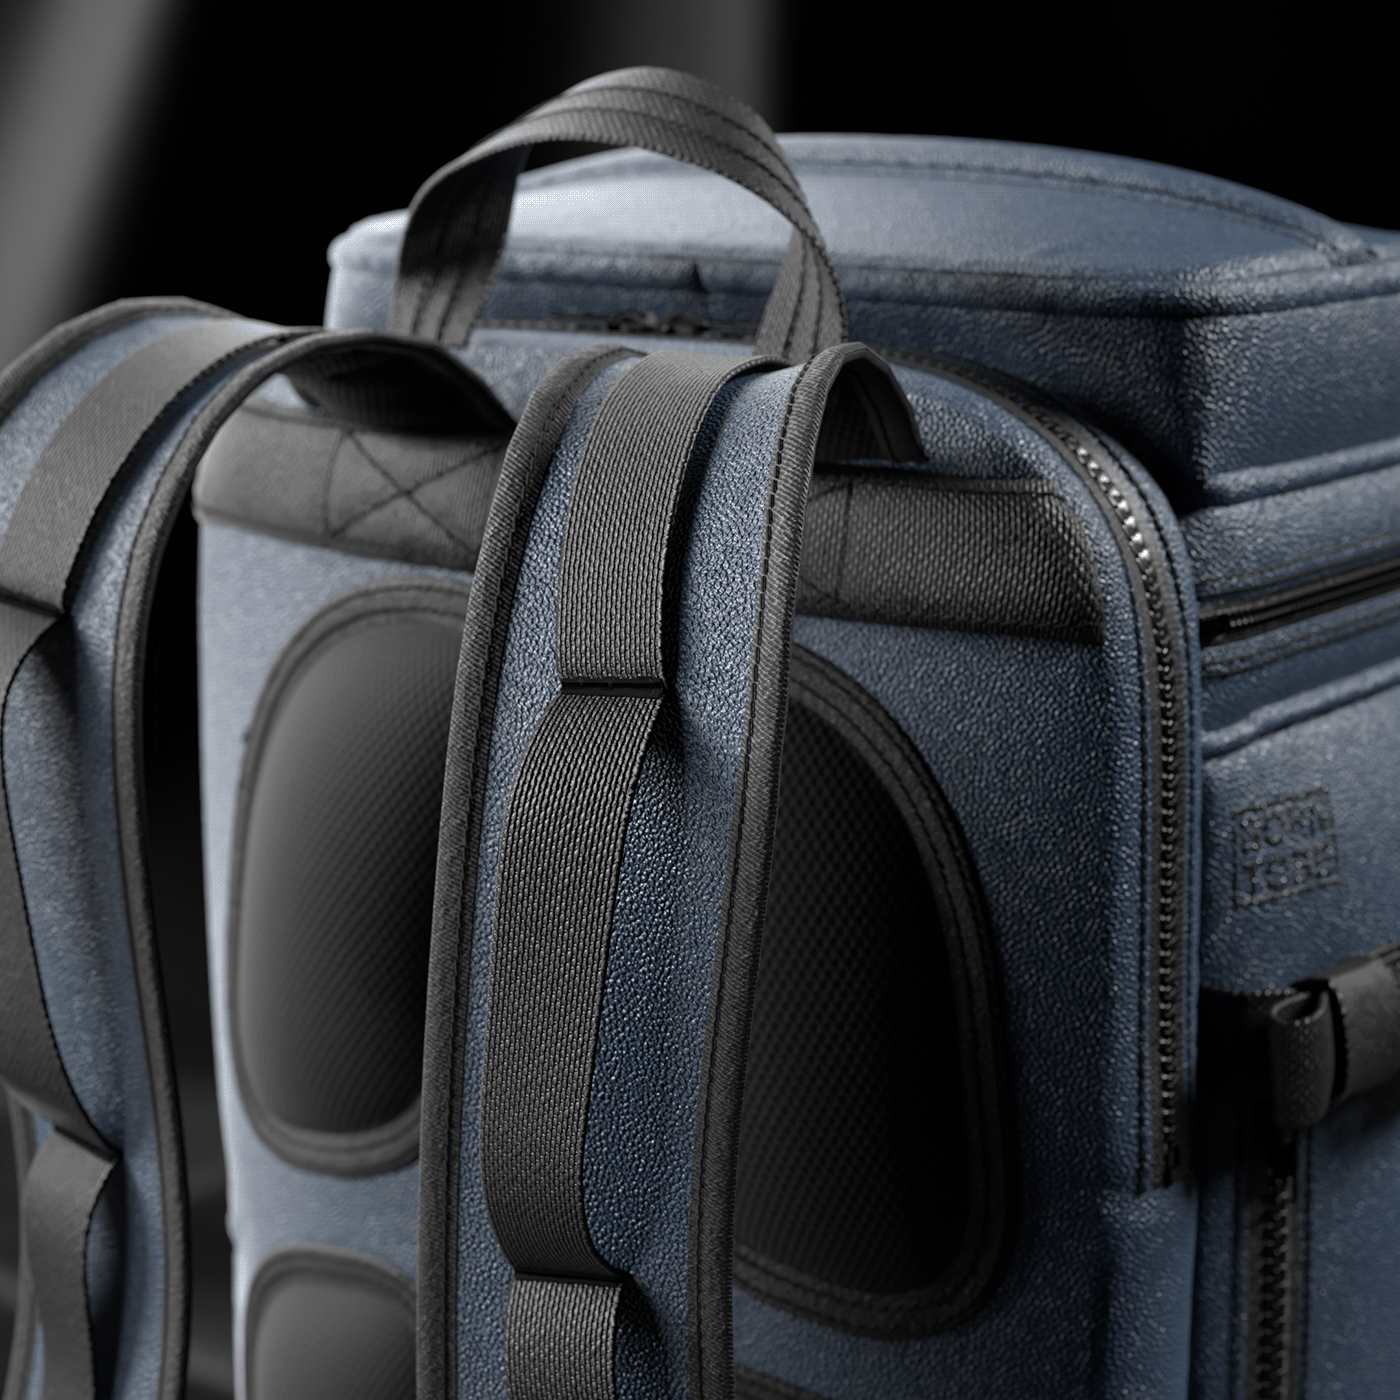 backpack Backpacks 3dproduct Clo3d marvelous designer 3dmodeling digitalproduct 3DDesign Render 3dproductdesign